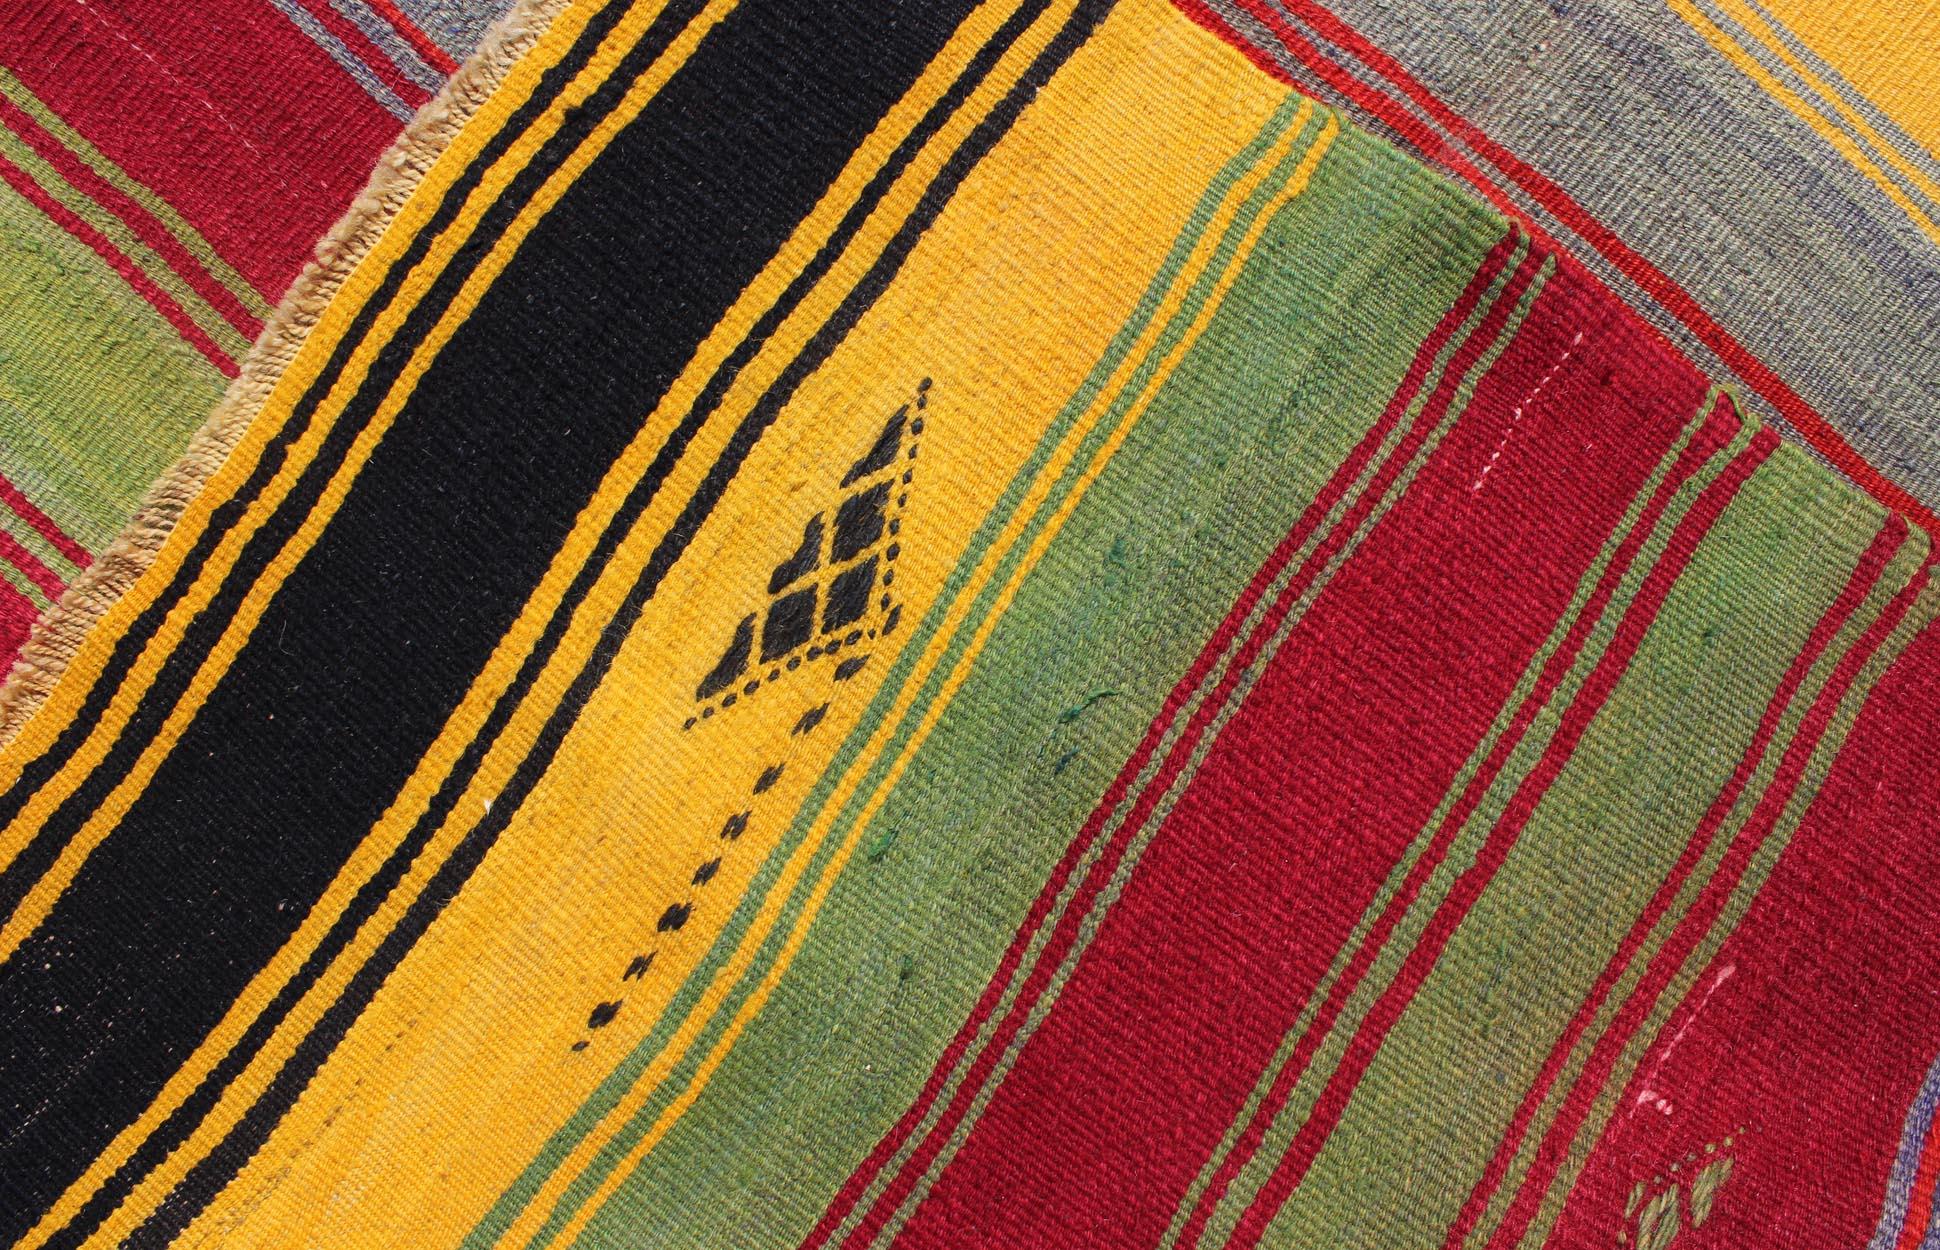 Colorful Vintage Turkish Kilim Rug with Subtle Tribal Shapes and Stripes Design For Sale 6